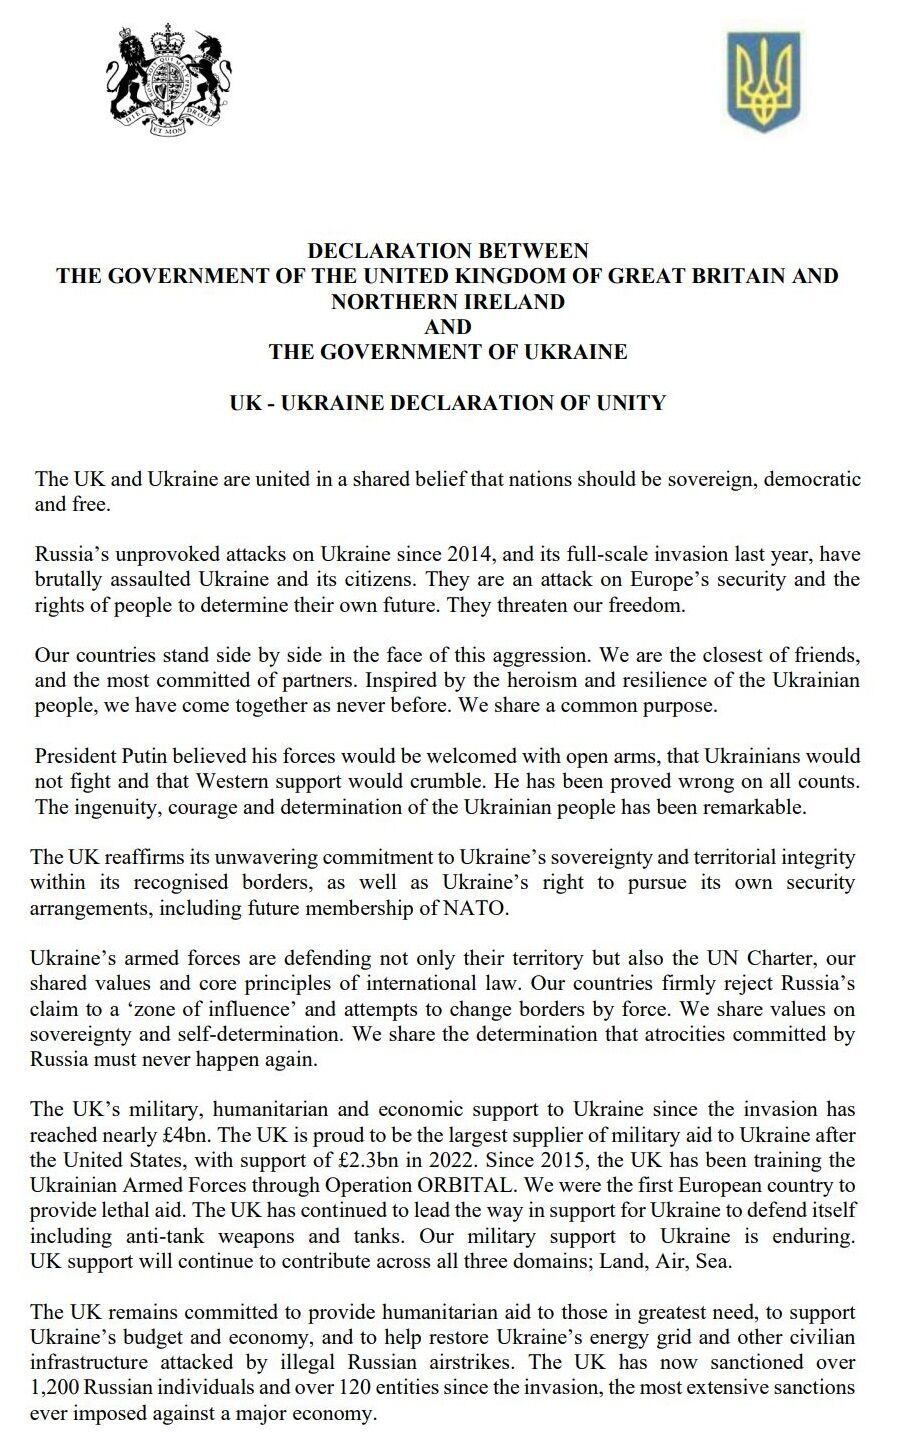 "Разом побудуємо сильну Україну": що передбачає Лондонська декларація, підписана Зеленським і Сунаком